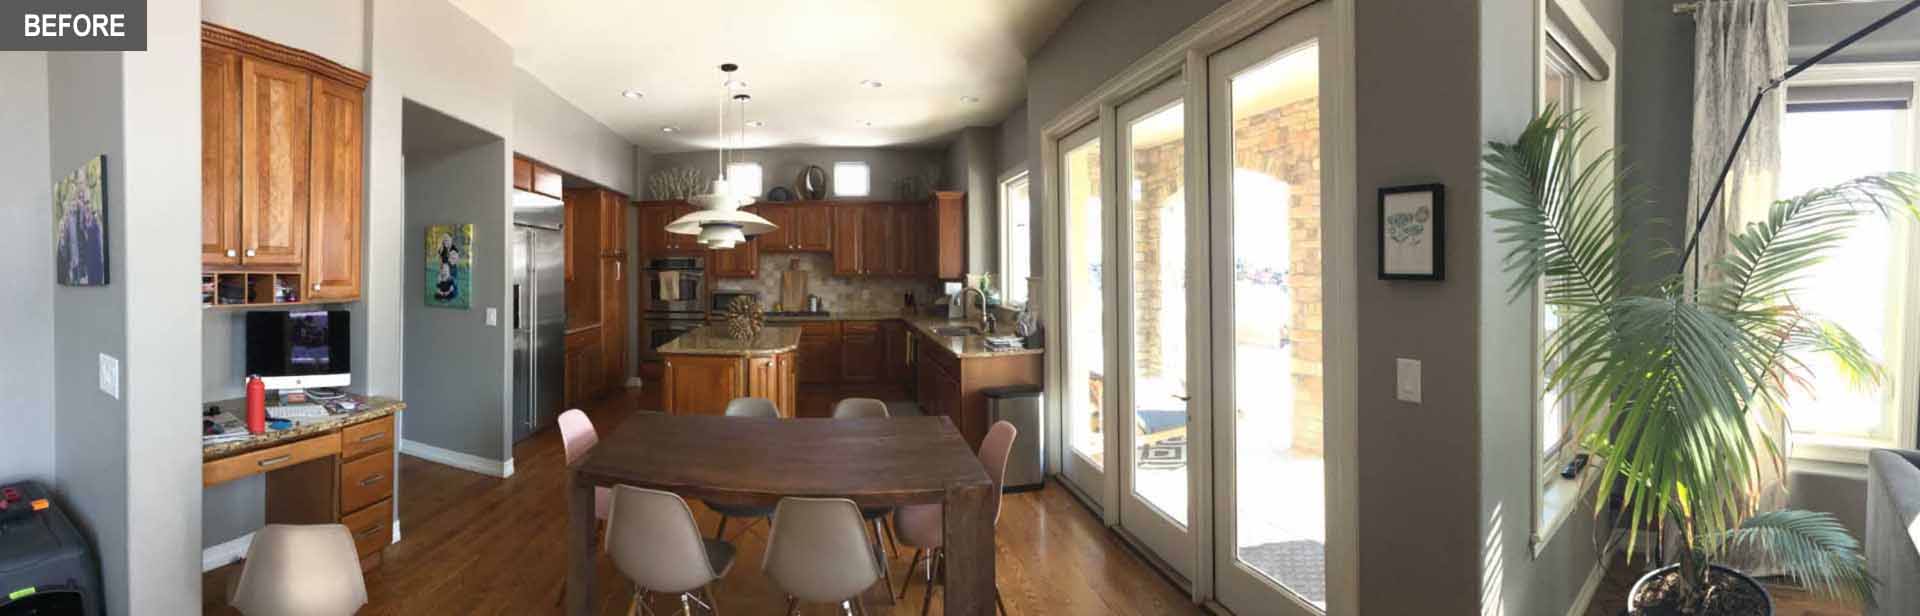 قبل از - یک آشپزخانه قدیمی شامل آشپزخانه درجه یک سازنده با کابینت های چوبی است که فضا را کاملاً تاریک کرده است.